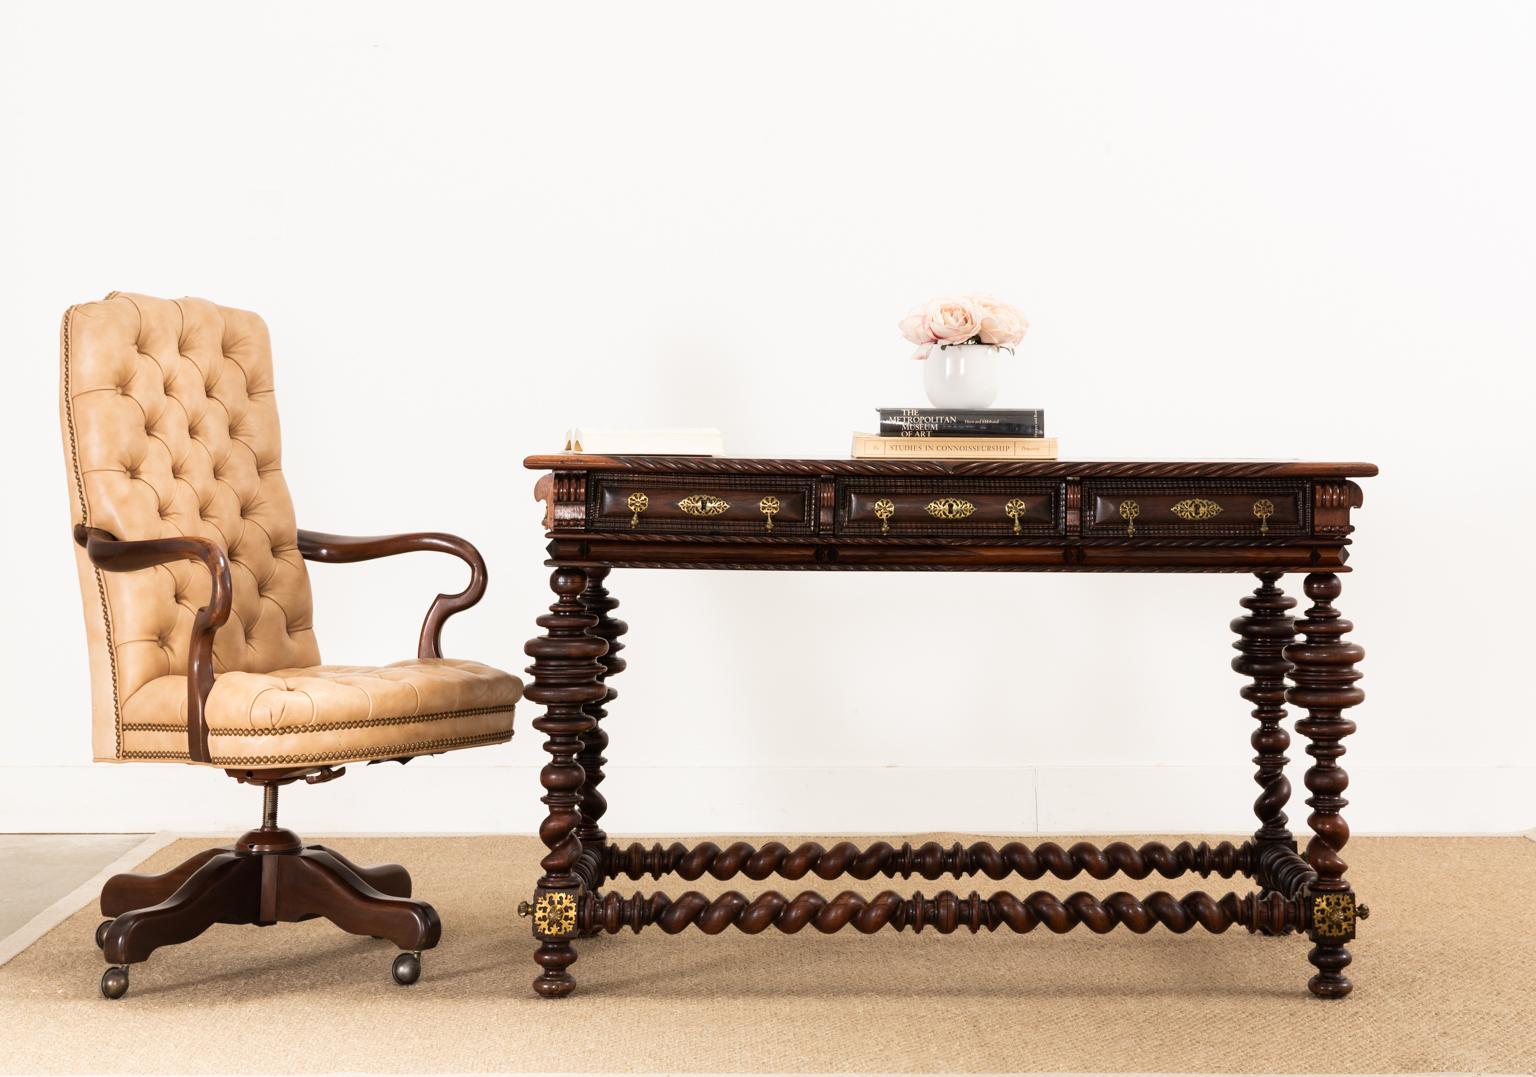 Klassischer englischer Regency-Stil mit hoher Rückenlehne und getuftetem Leder, hergestellt von Drexel-Heritage. Der Sessel hat einen neigbaren und drehbaren Sitz aus einem Hartholzrahmen. Die großzügige Sitzfläche hat breite Hirtenstab-Arme und